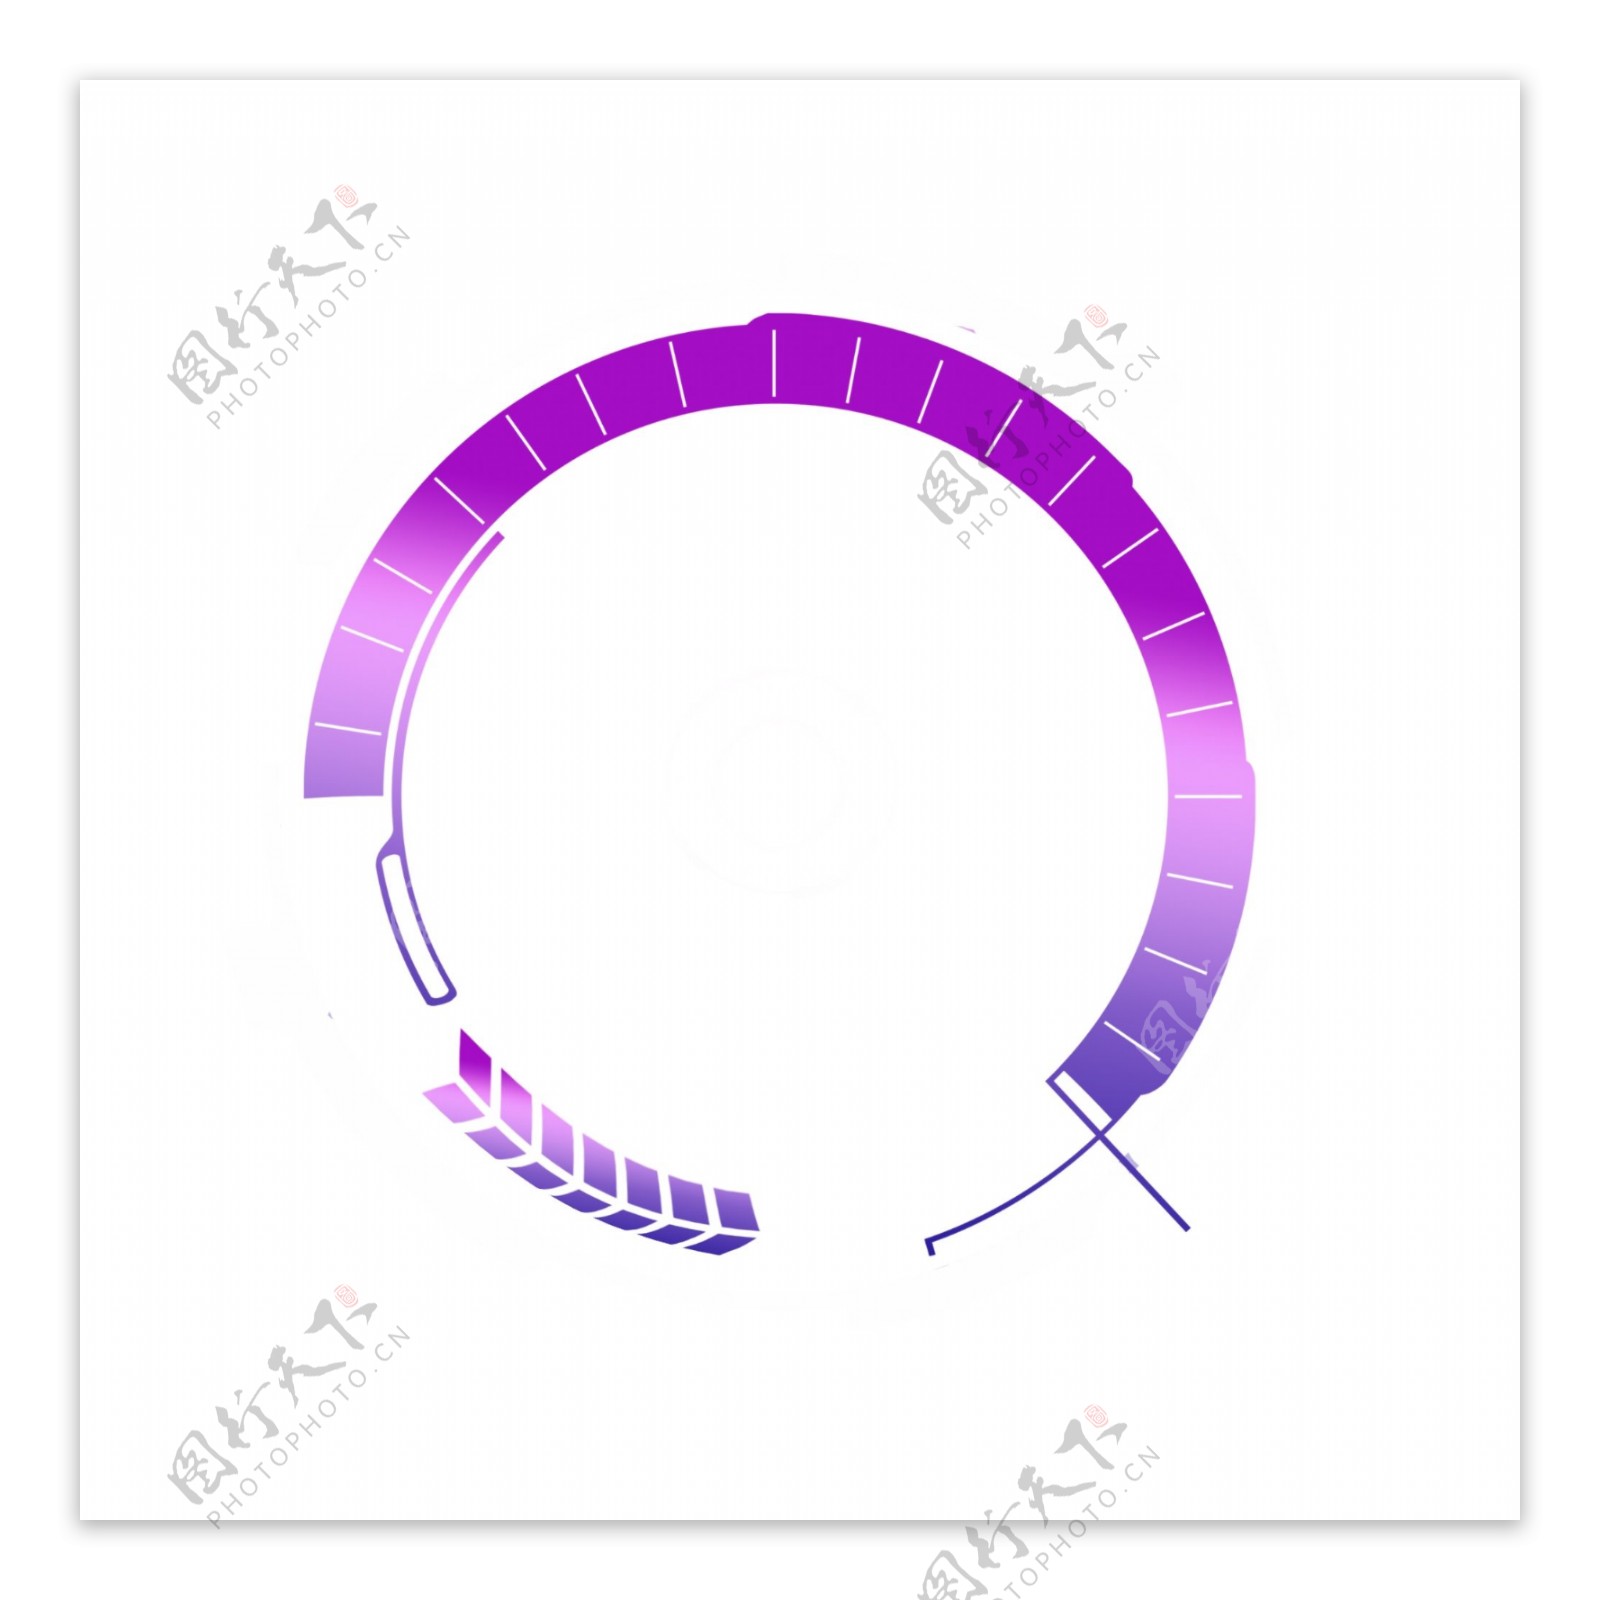 创意紫色圆形边框元素